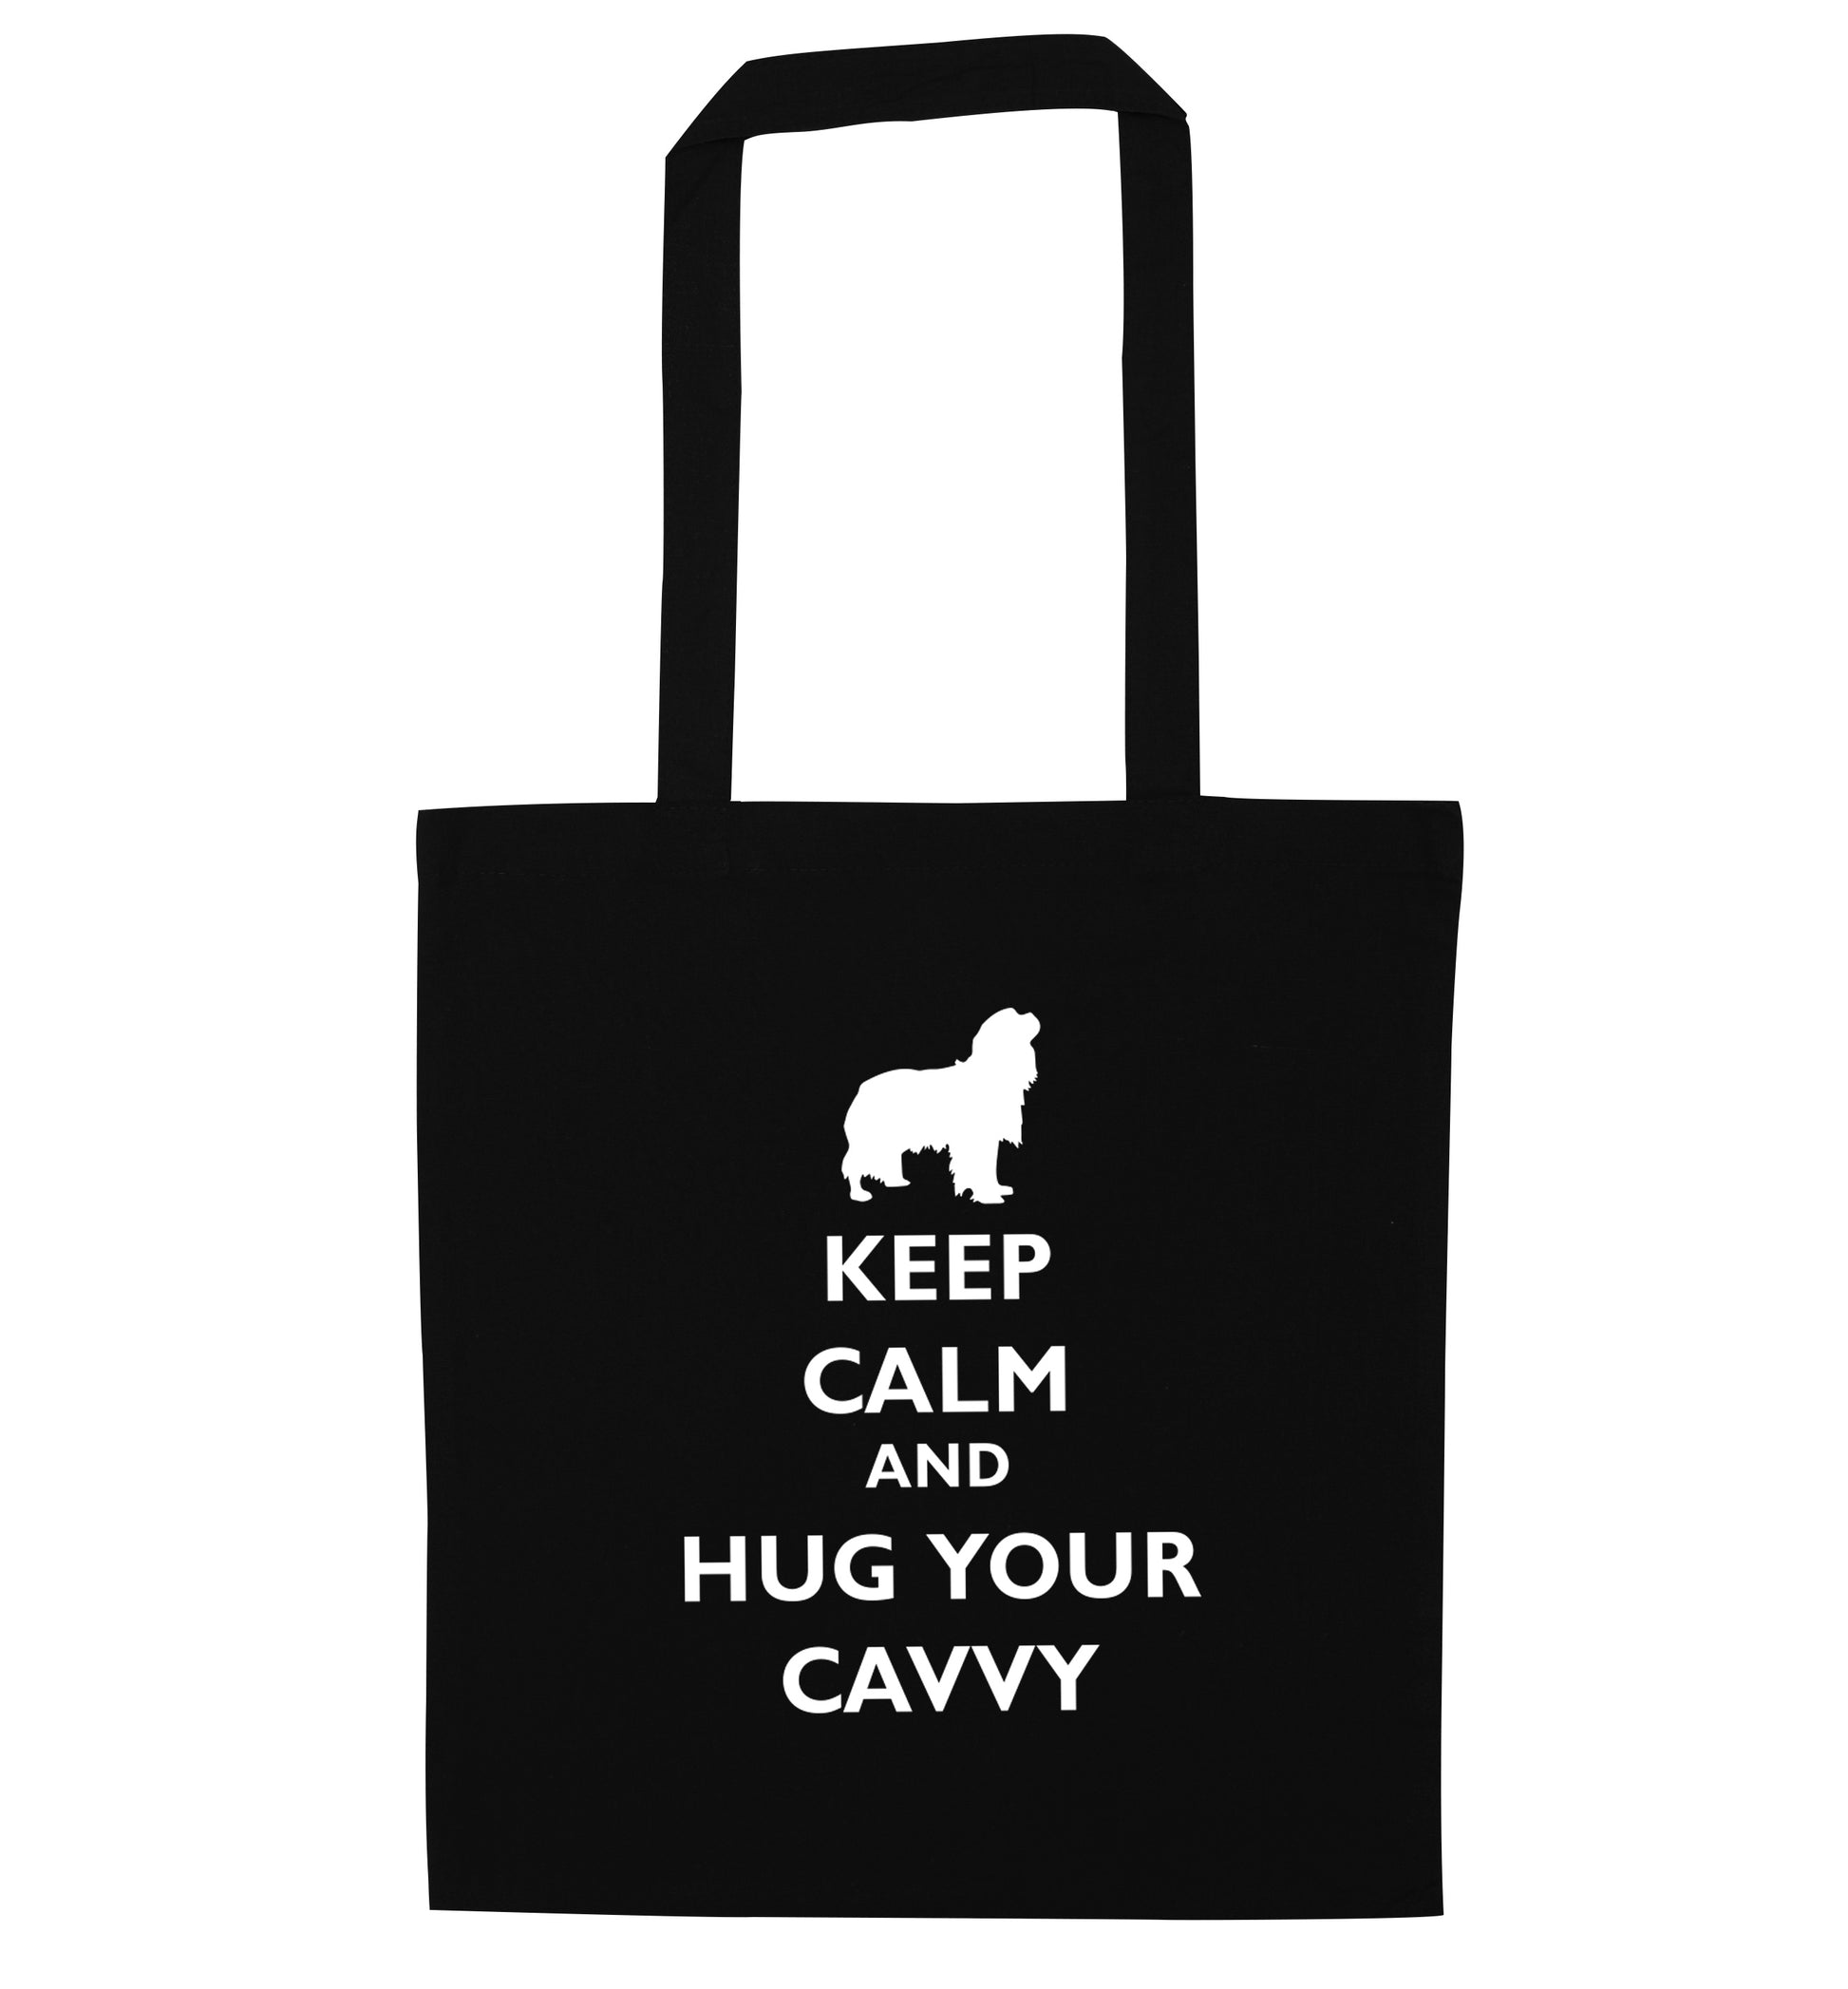 Keep calm and hug your cavvy black tote bag